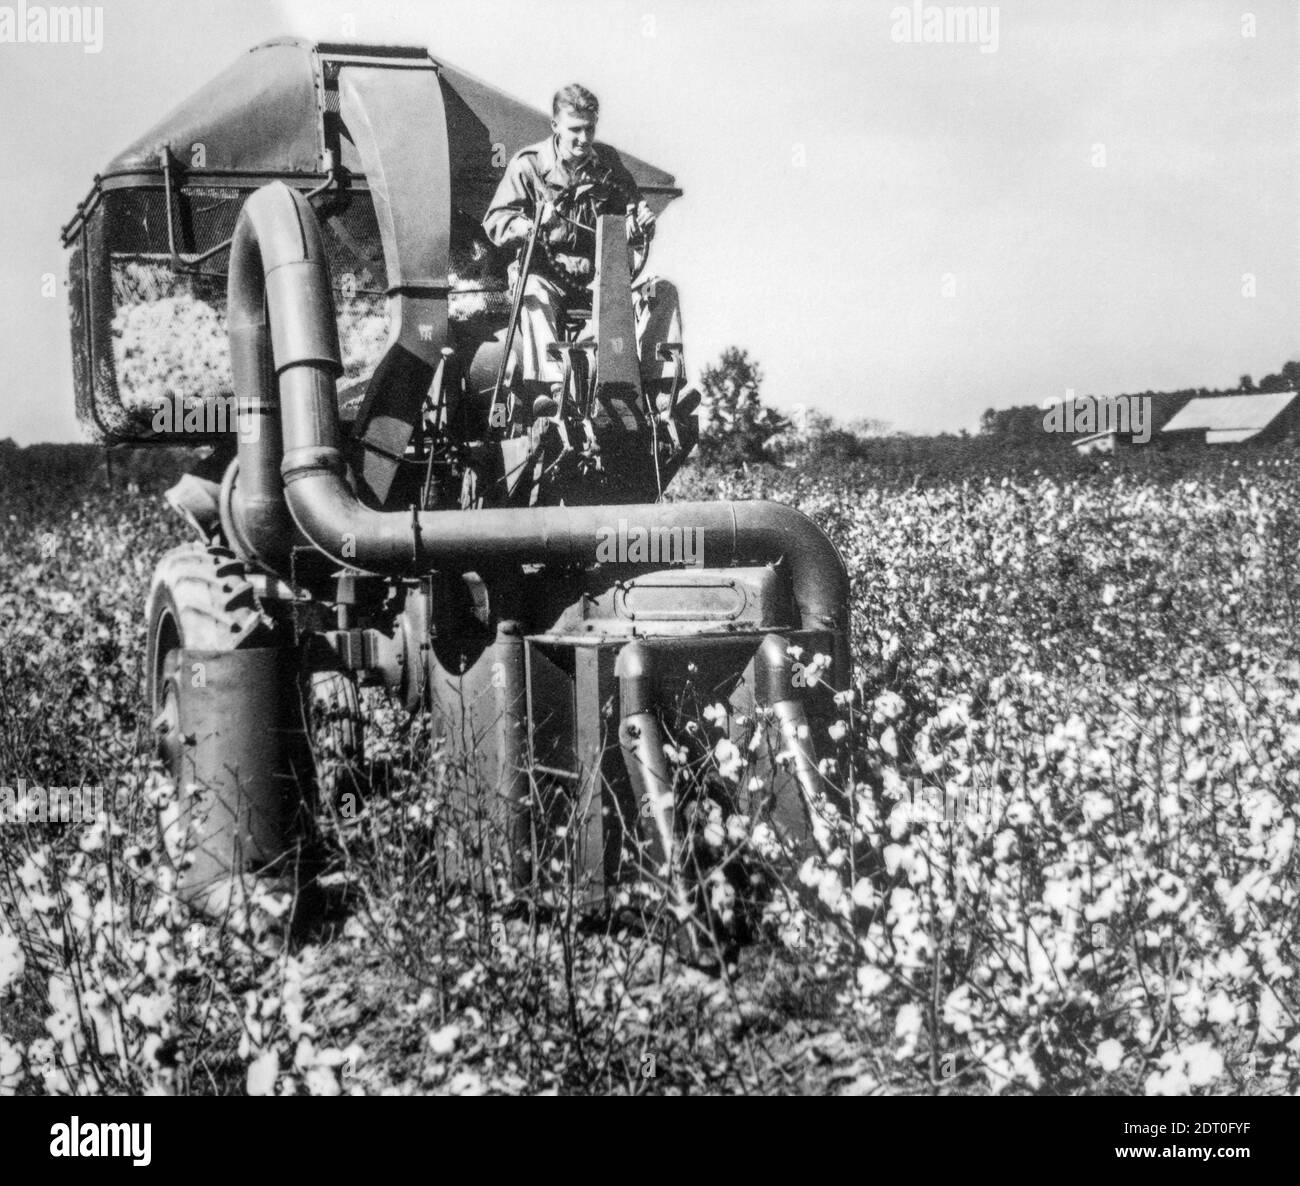 Foto de archivo en blanco y negro de la década de 1950 que muestra el campo de algodón de cosecha de la cosechadora de algodón / peladora mecánica, Estados Unidos Foto de stock